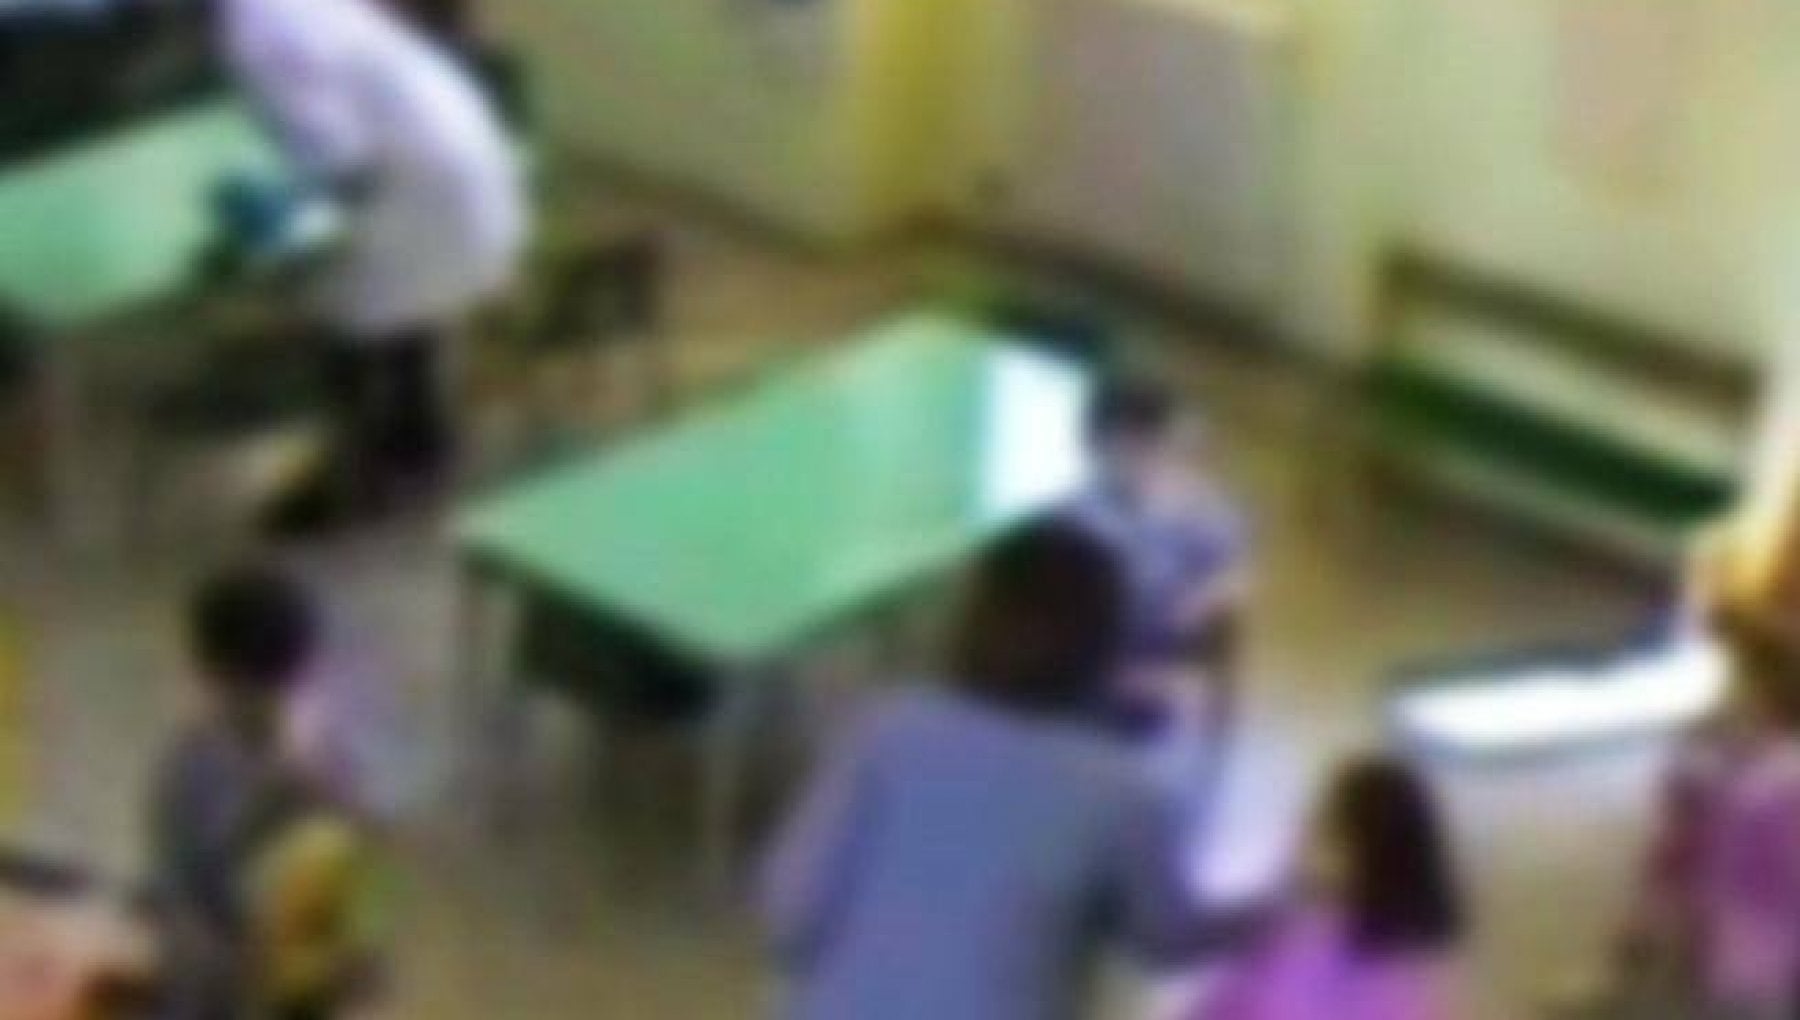 Un'insegnante di sostegno picchiava un bimbo di 7 anni: violenze e soprusi riprese dalle telecamere